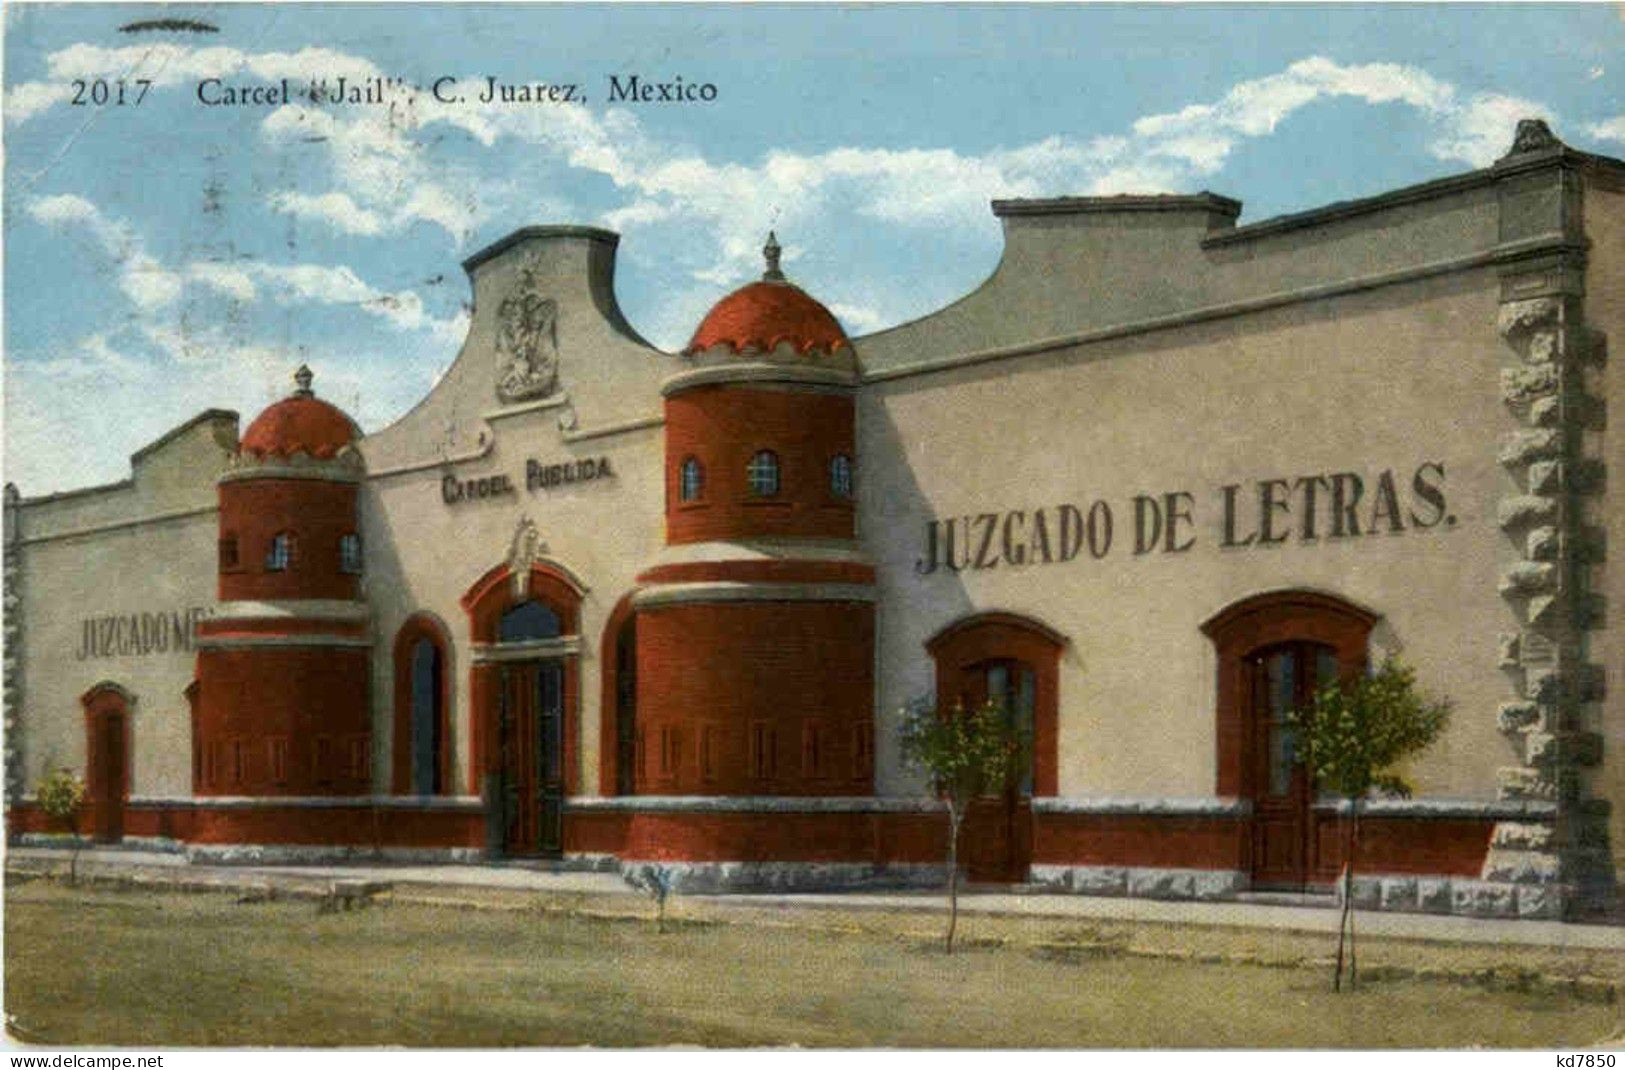 C. Juarez - Carcel Jail - Mexico